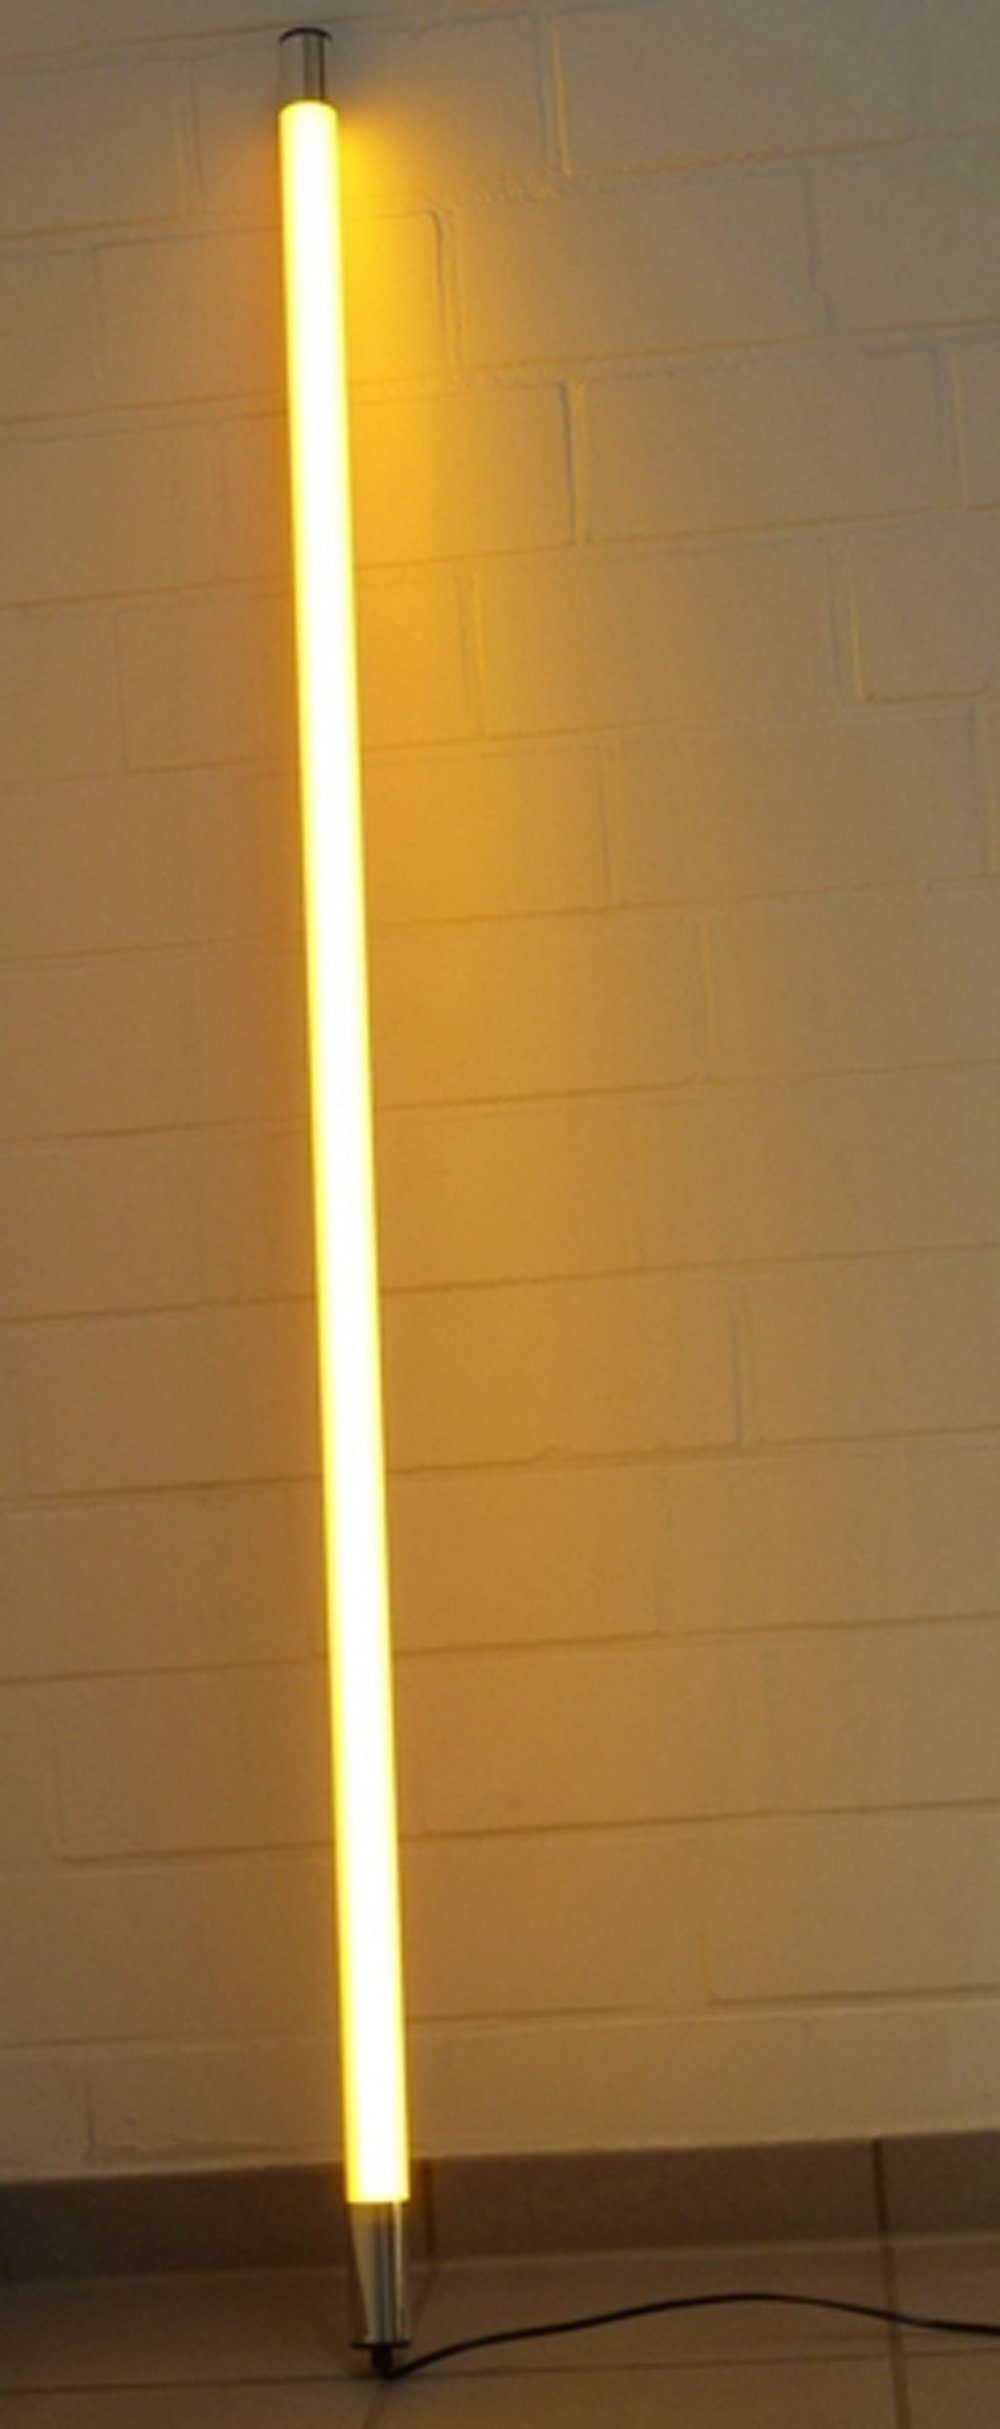 XENON LED Wandleuchte 8012 LED Leuchtstab Satiniert 1,23m Länge 2000 Lumen IP44 Außen Orange, LED Röhre T8, Xenon Orange